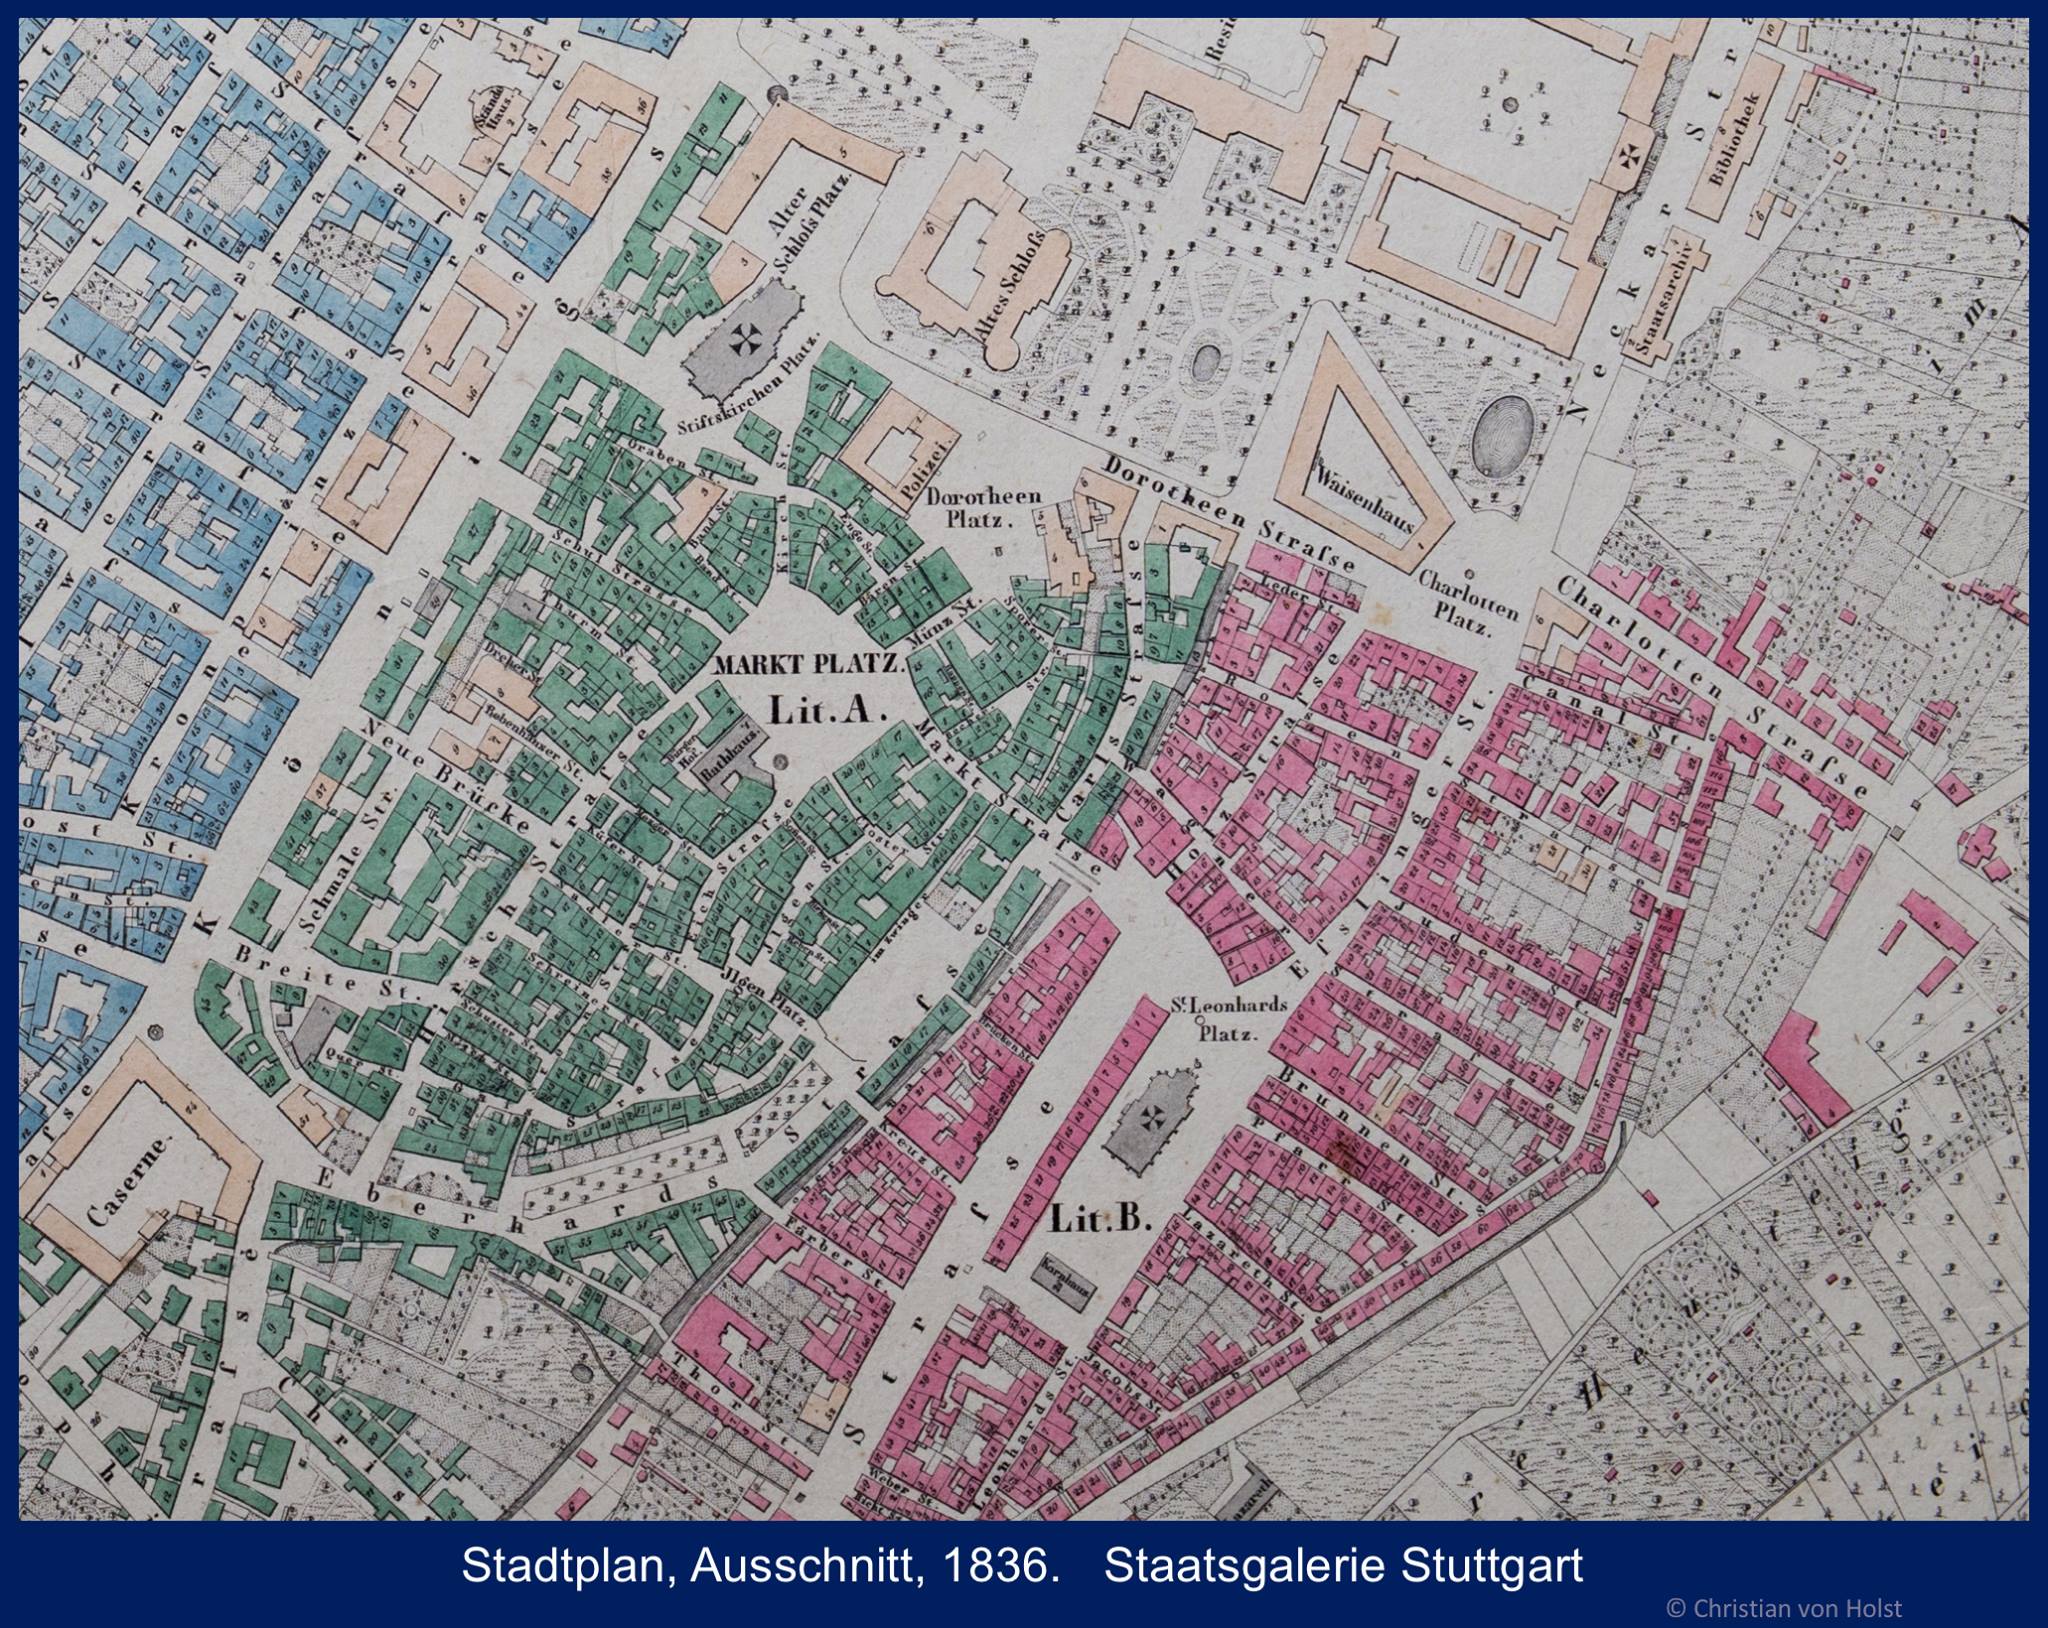 Leonhardsviertel: Geschichte und Rolle in der Stadt – Stadtpan Stuttgarts 1836